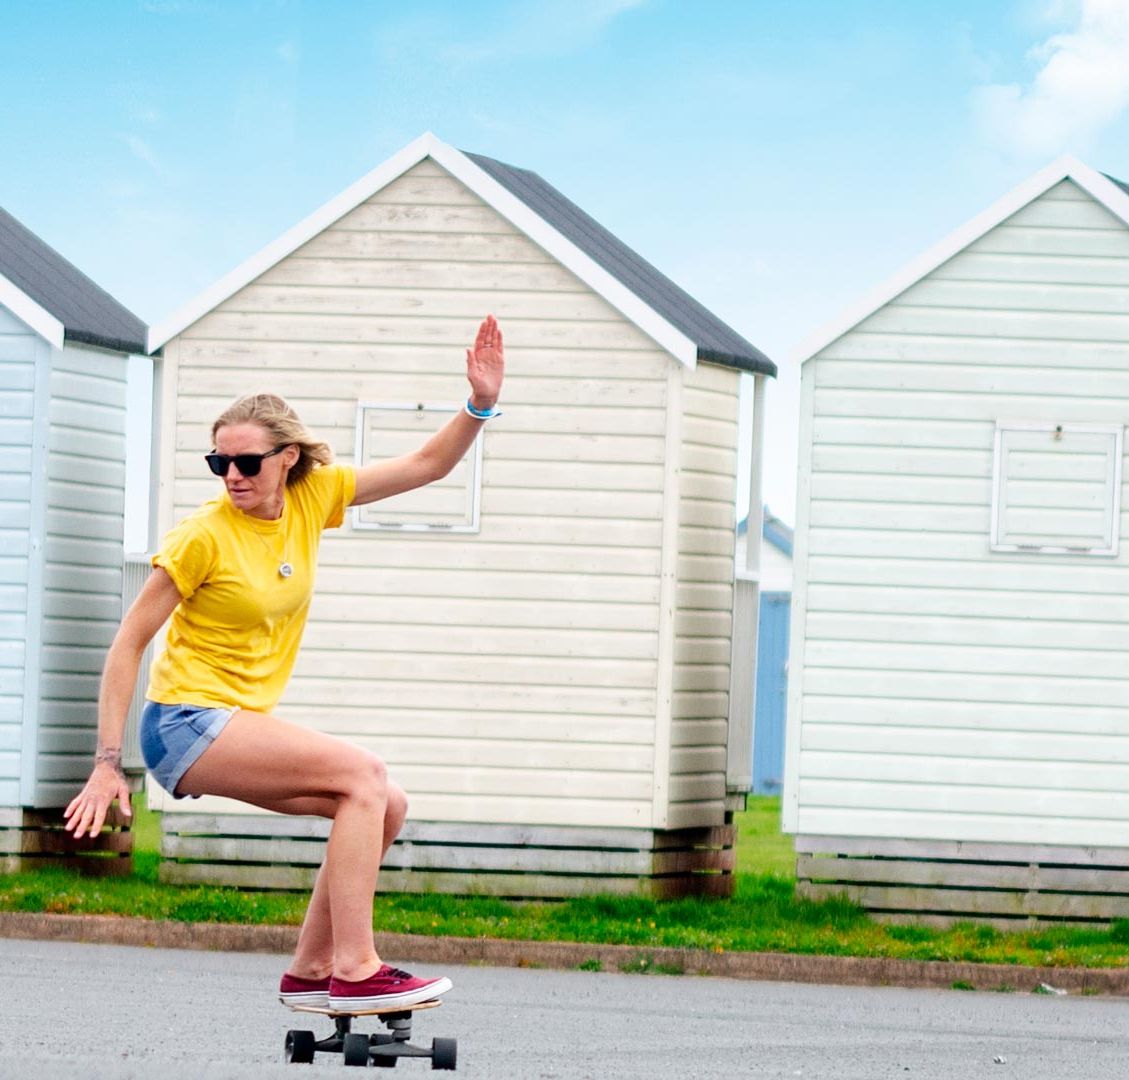 Stella Grace on a skate board